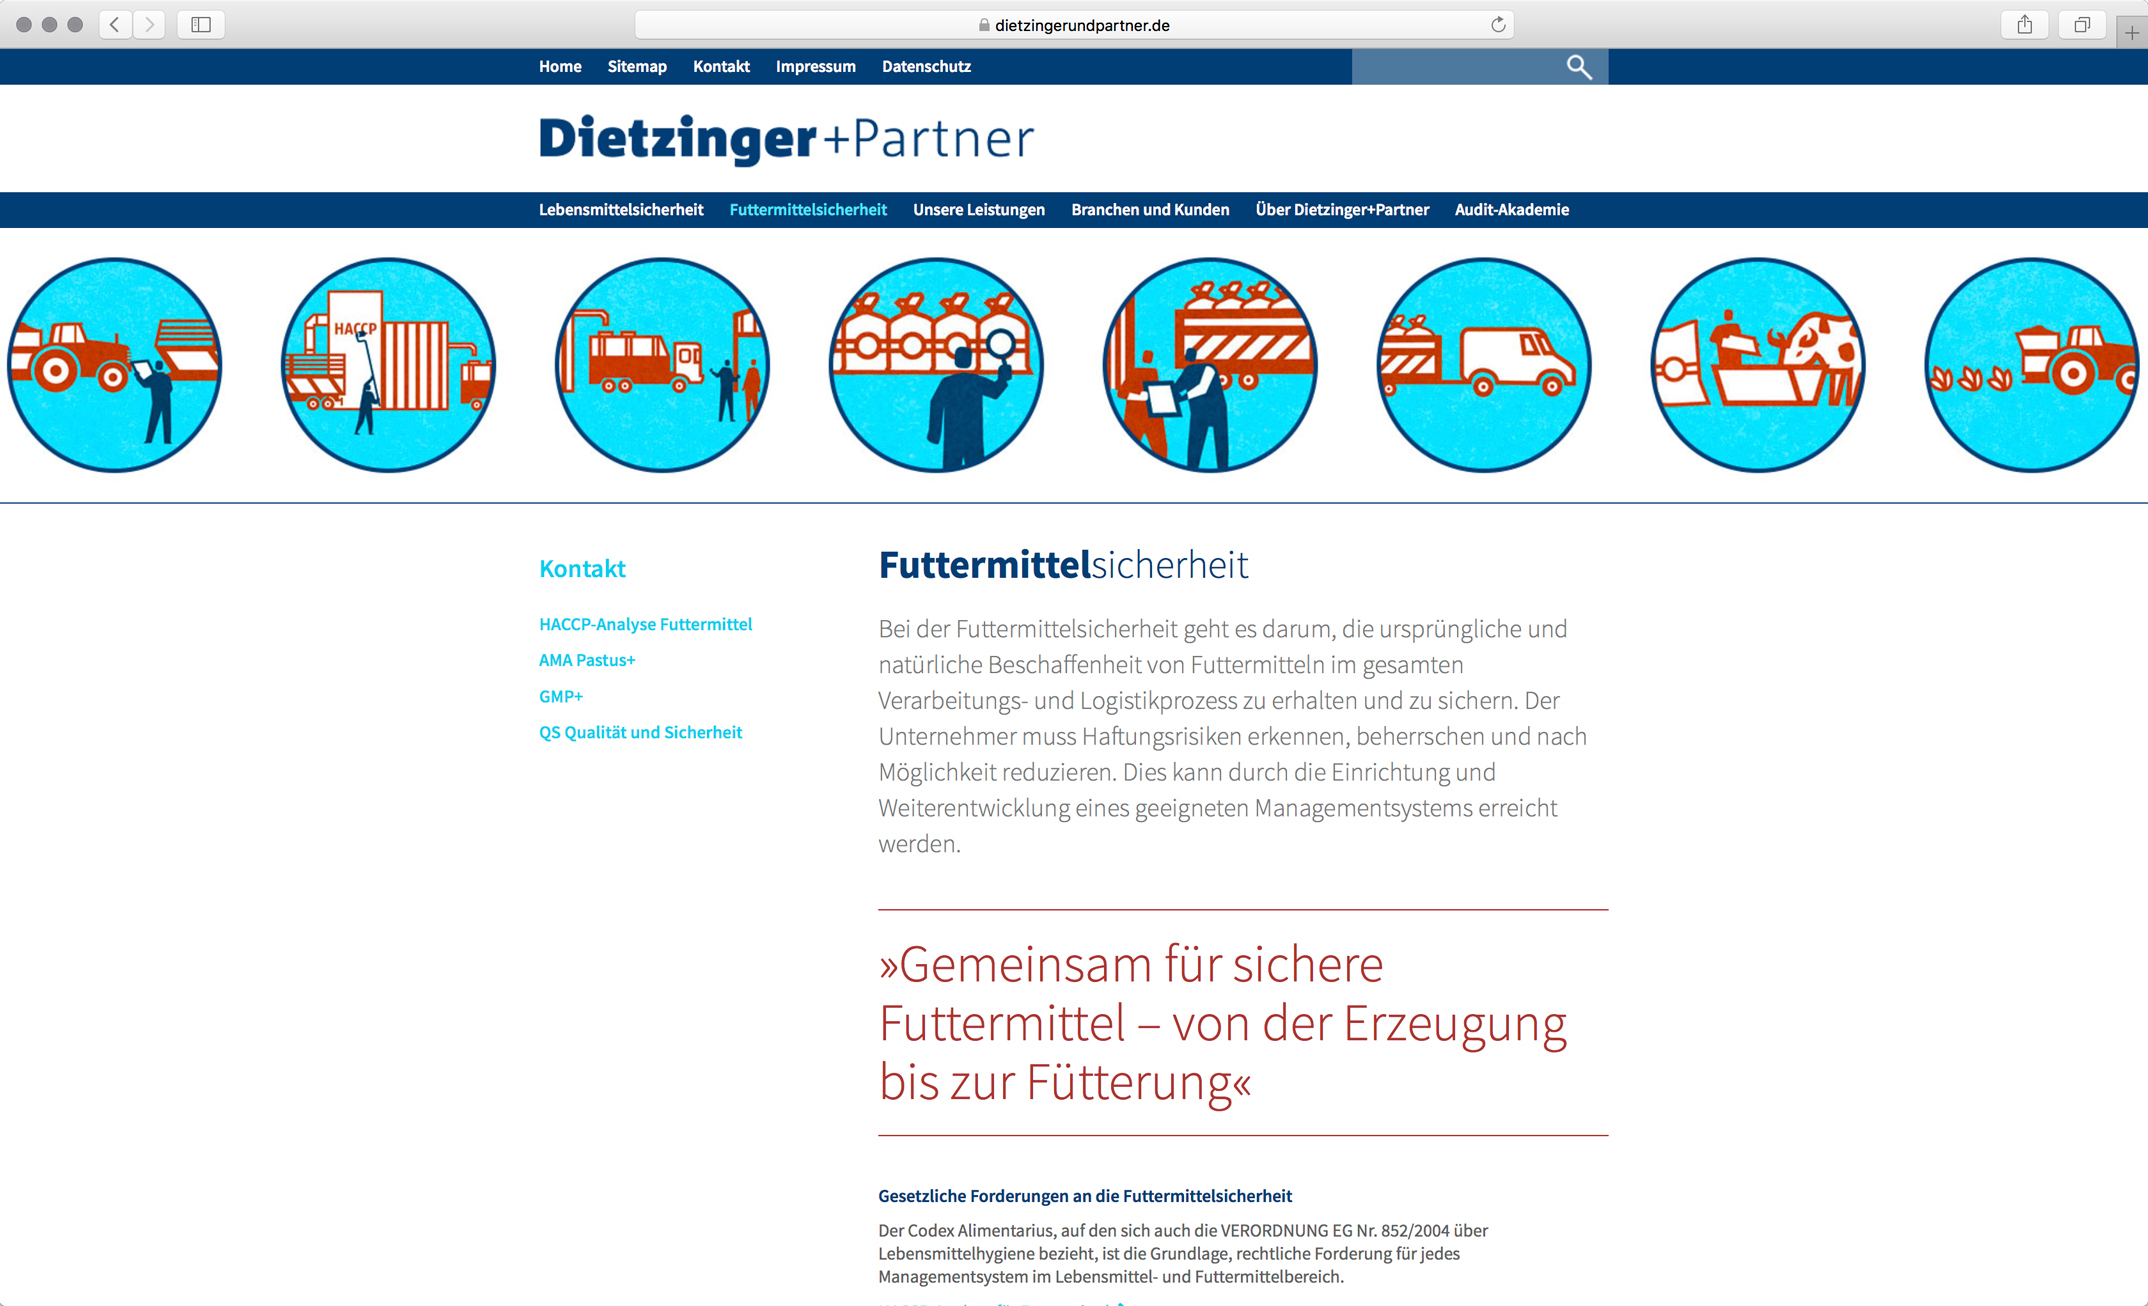 Webdesign, Unterseite Futtermittelsicherheit – Corporate Website, Dietzinger+Partner